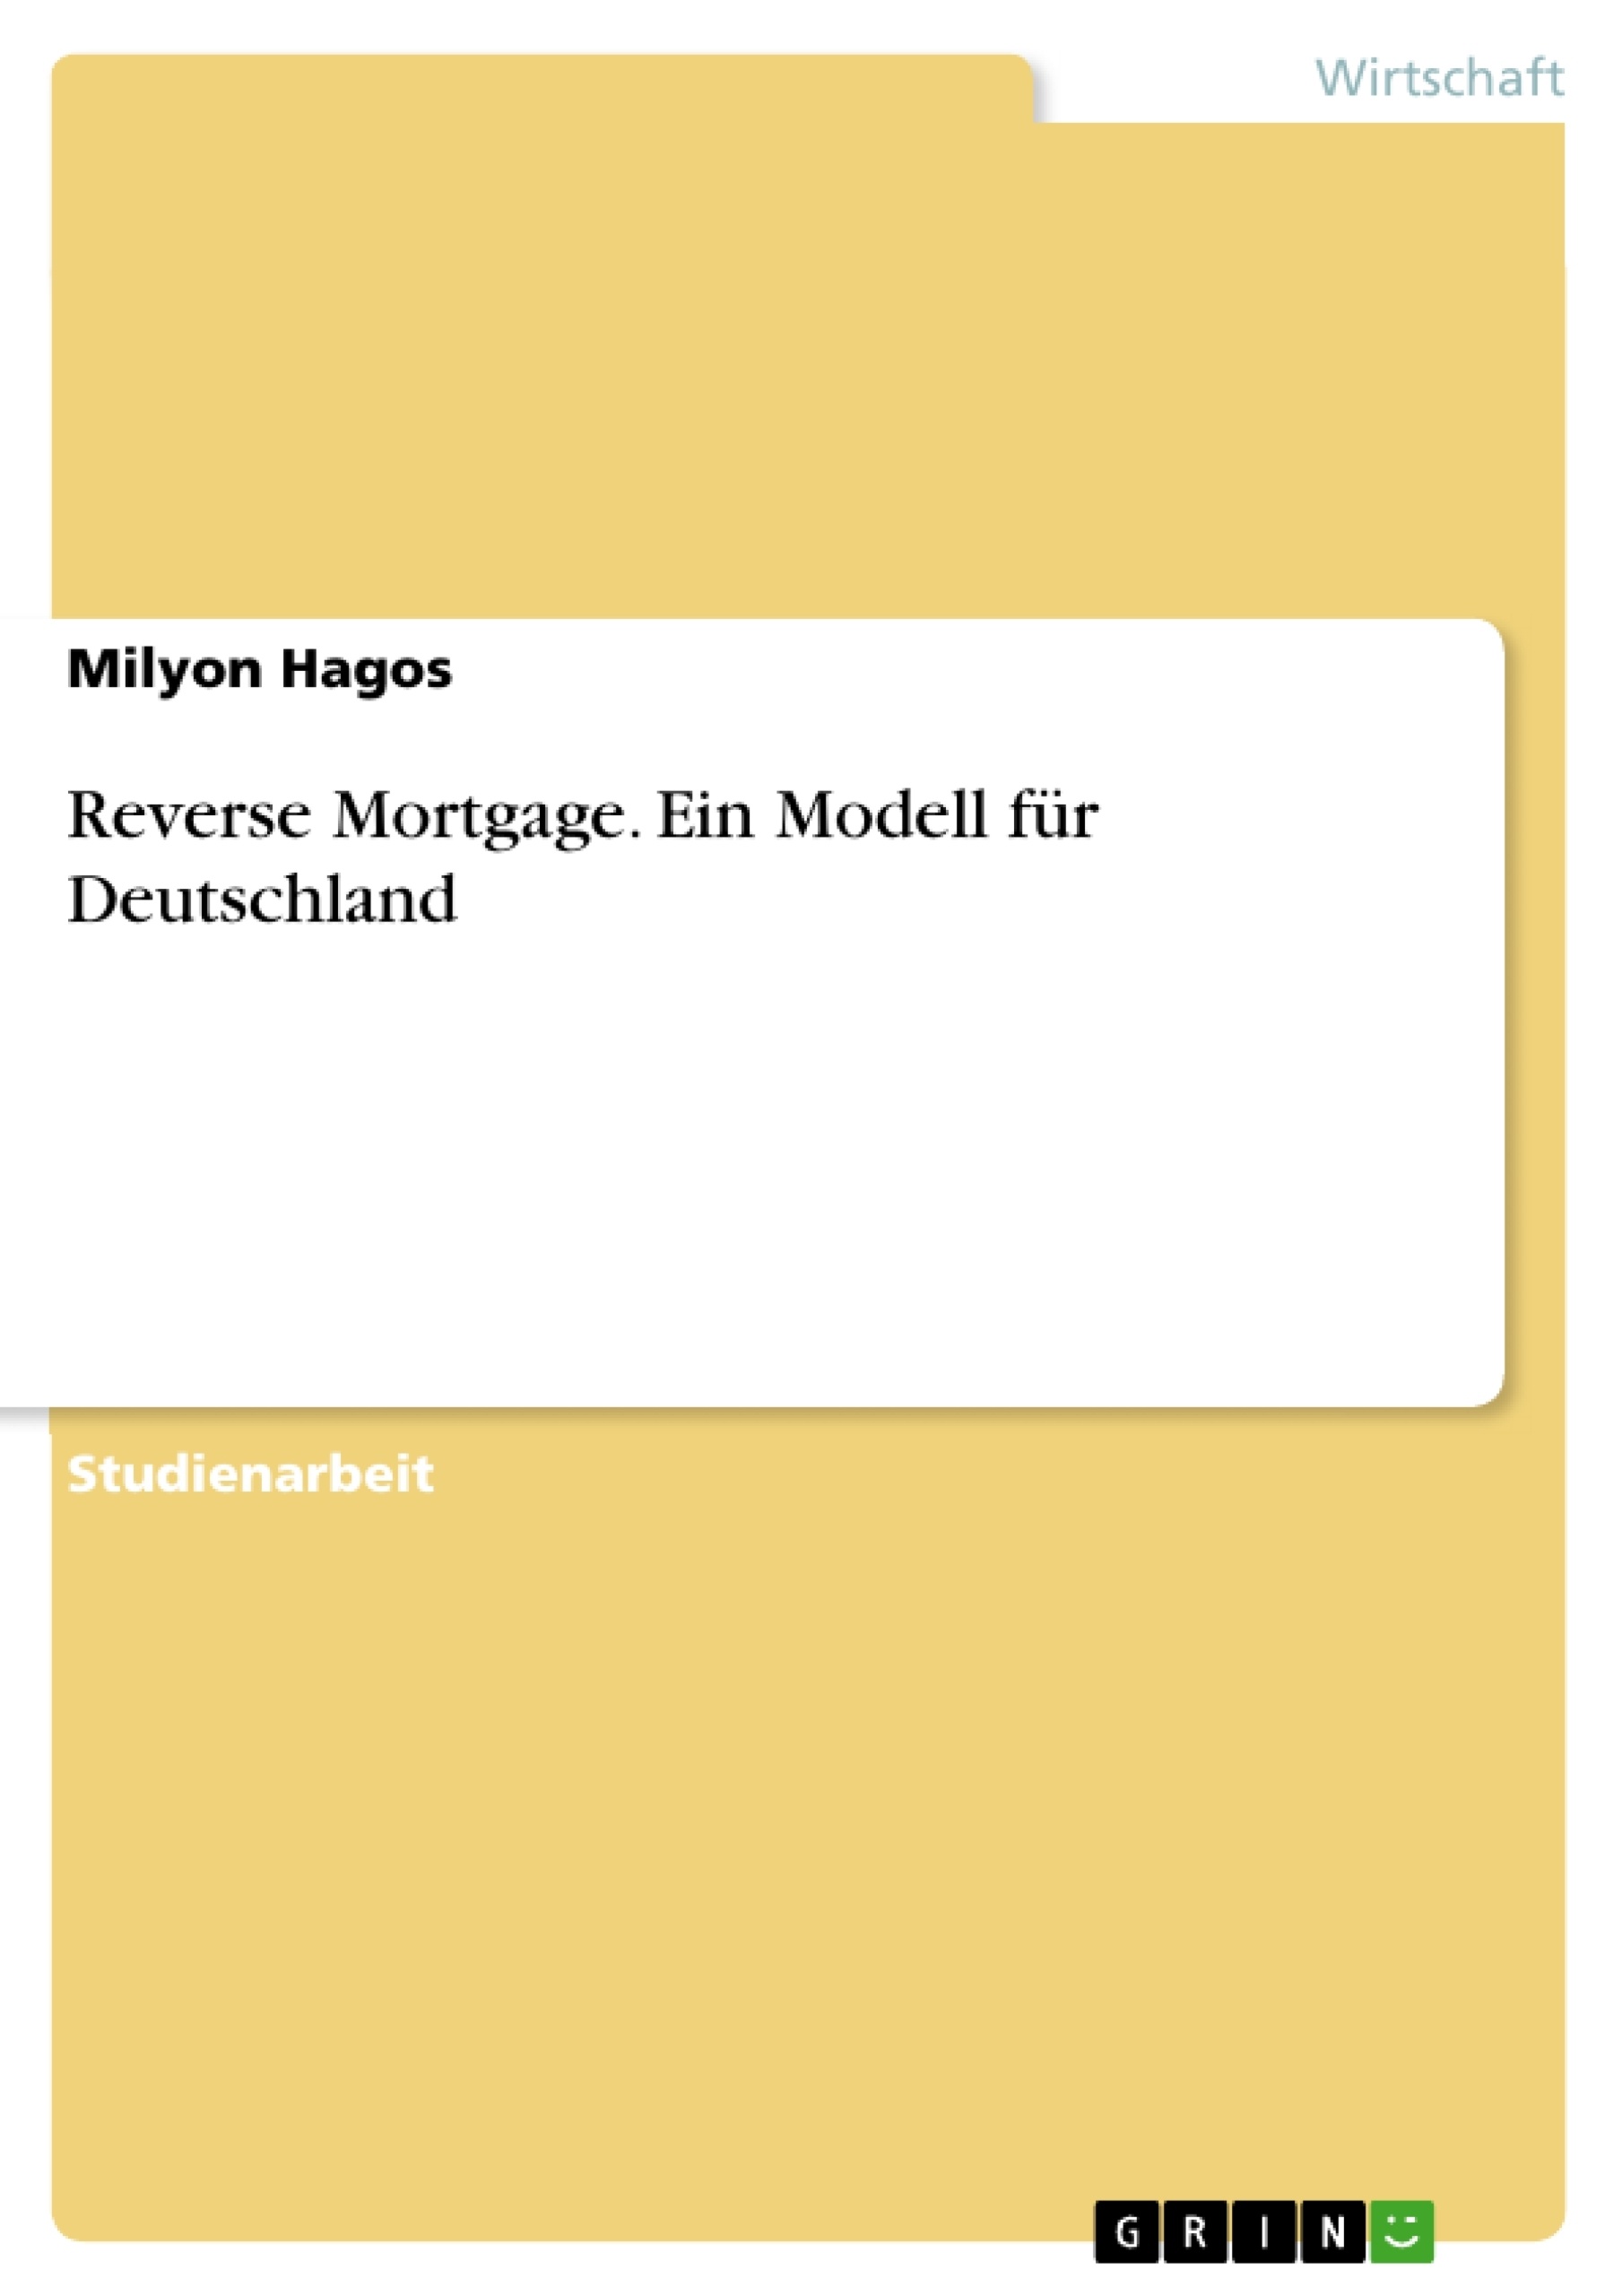 Titre: Reverse Mortgage. Ein Modell für Deutschland